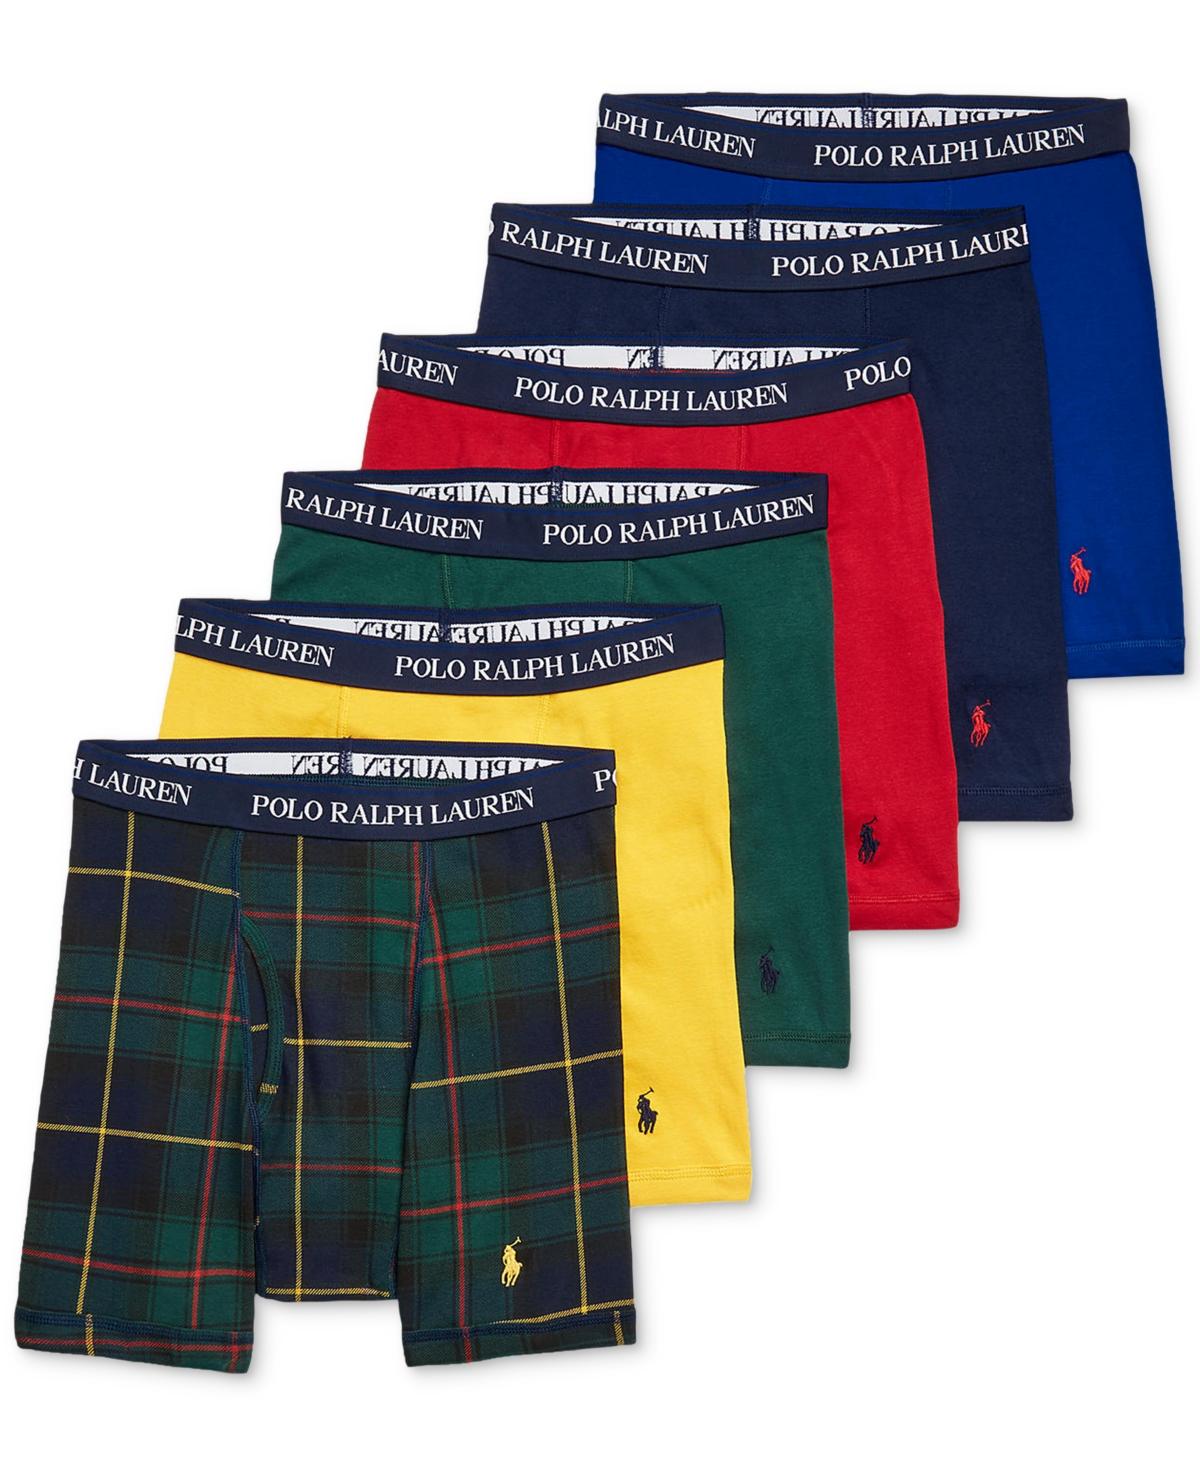 Polo Ralph Lauren 5 +1 Free Bonus. Classic-fit Cotton Boxer Briefs for Men